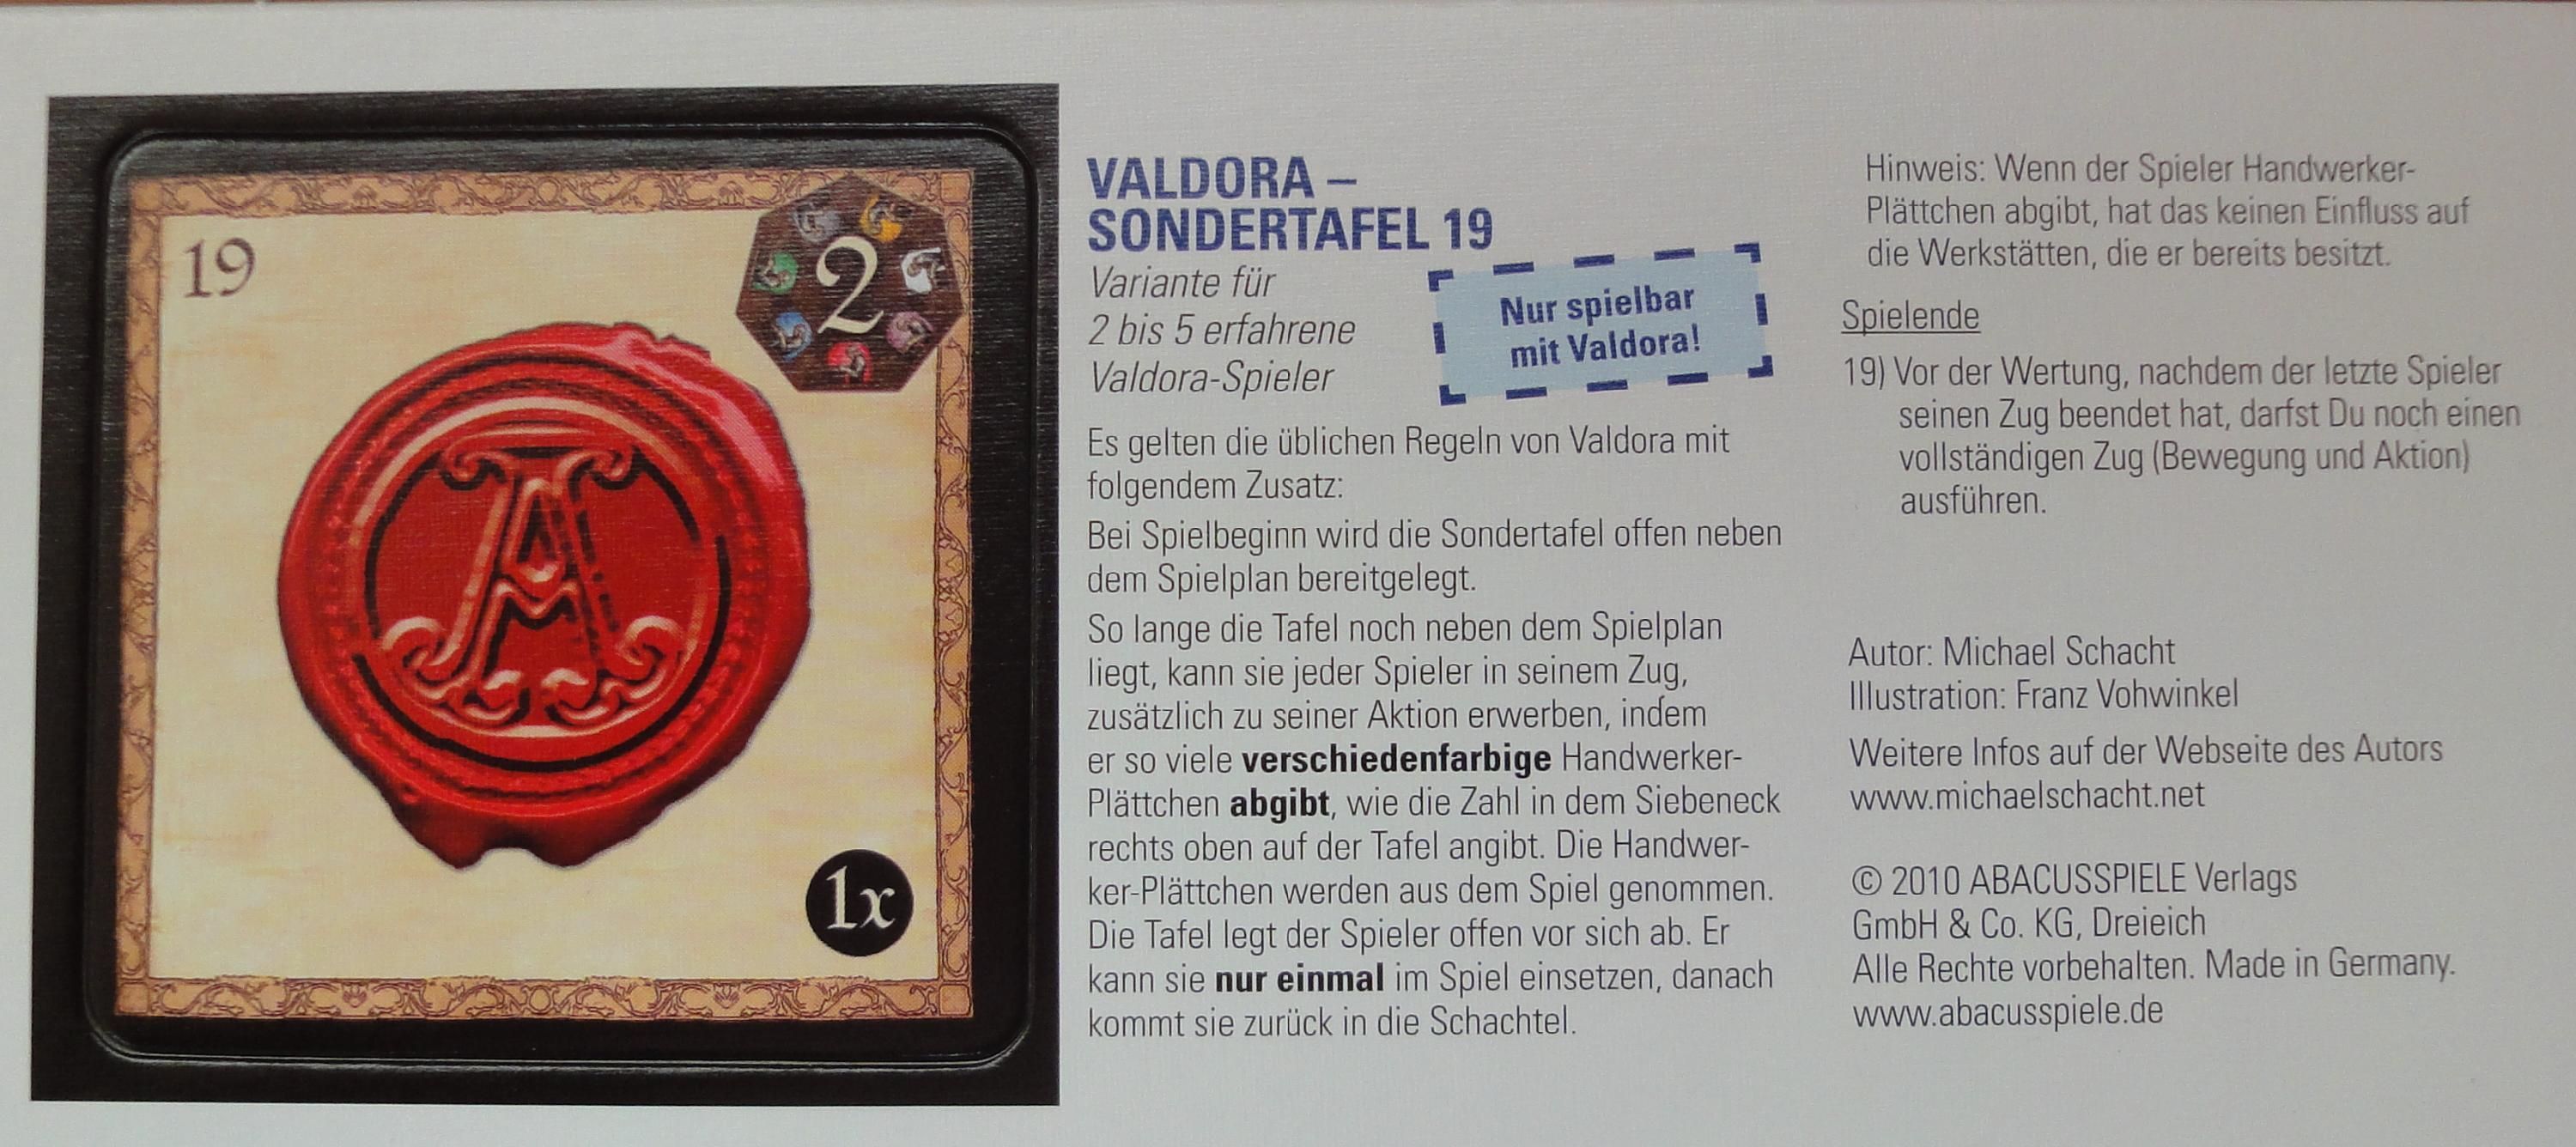 Valdora: Special board 19